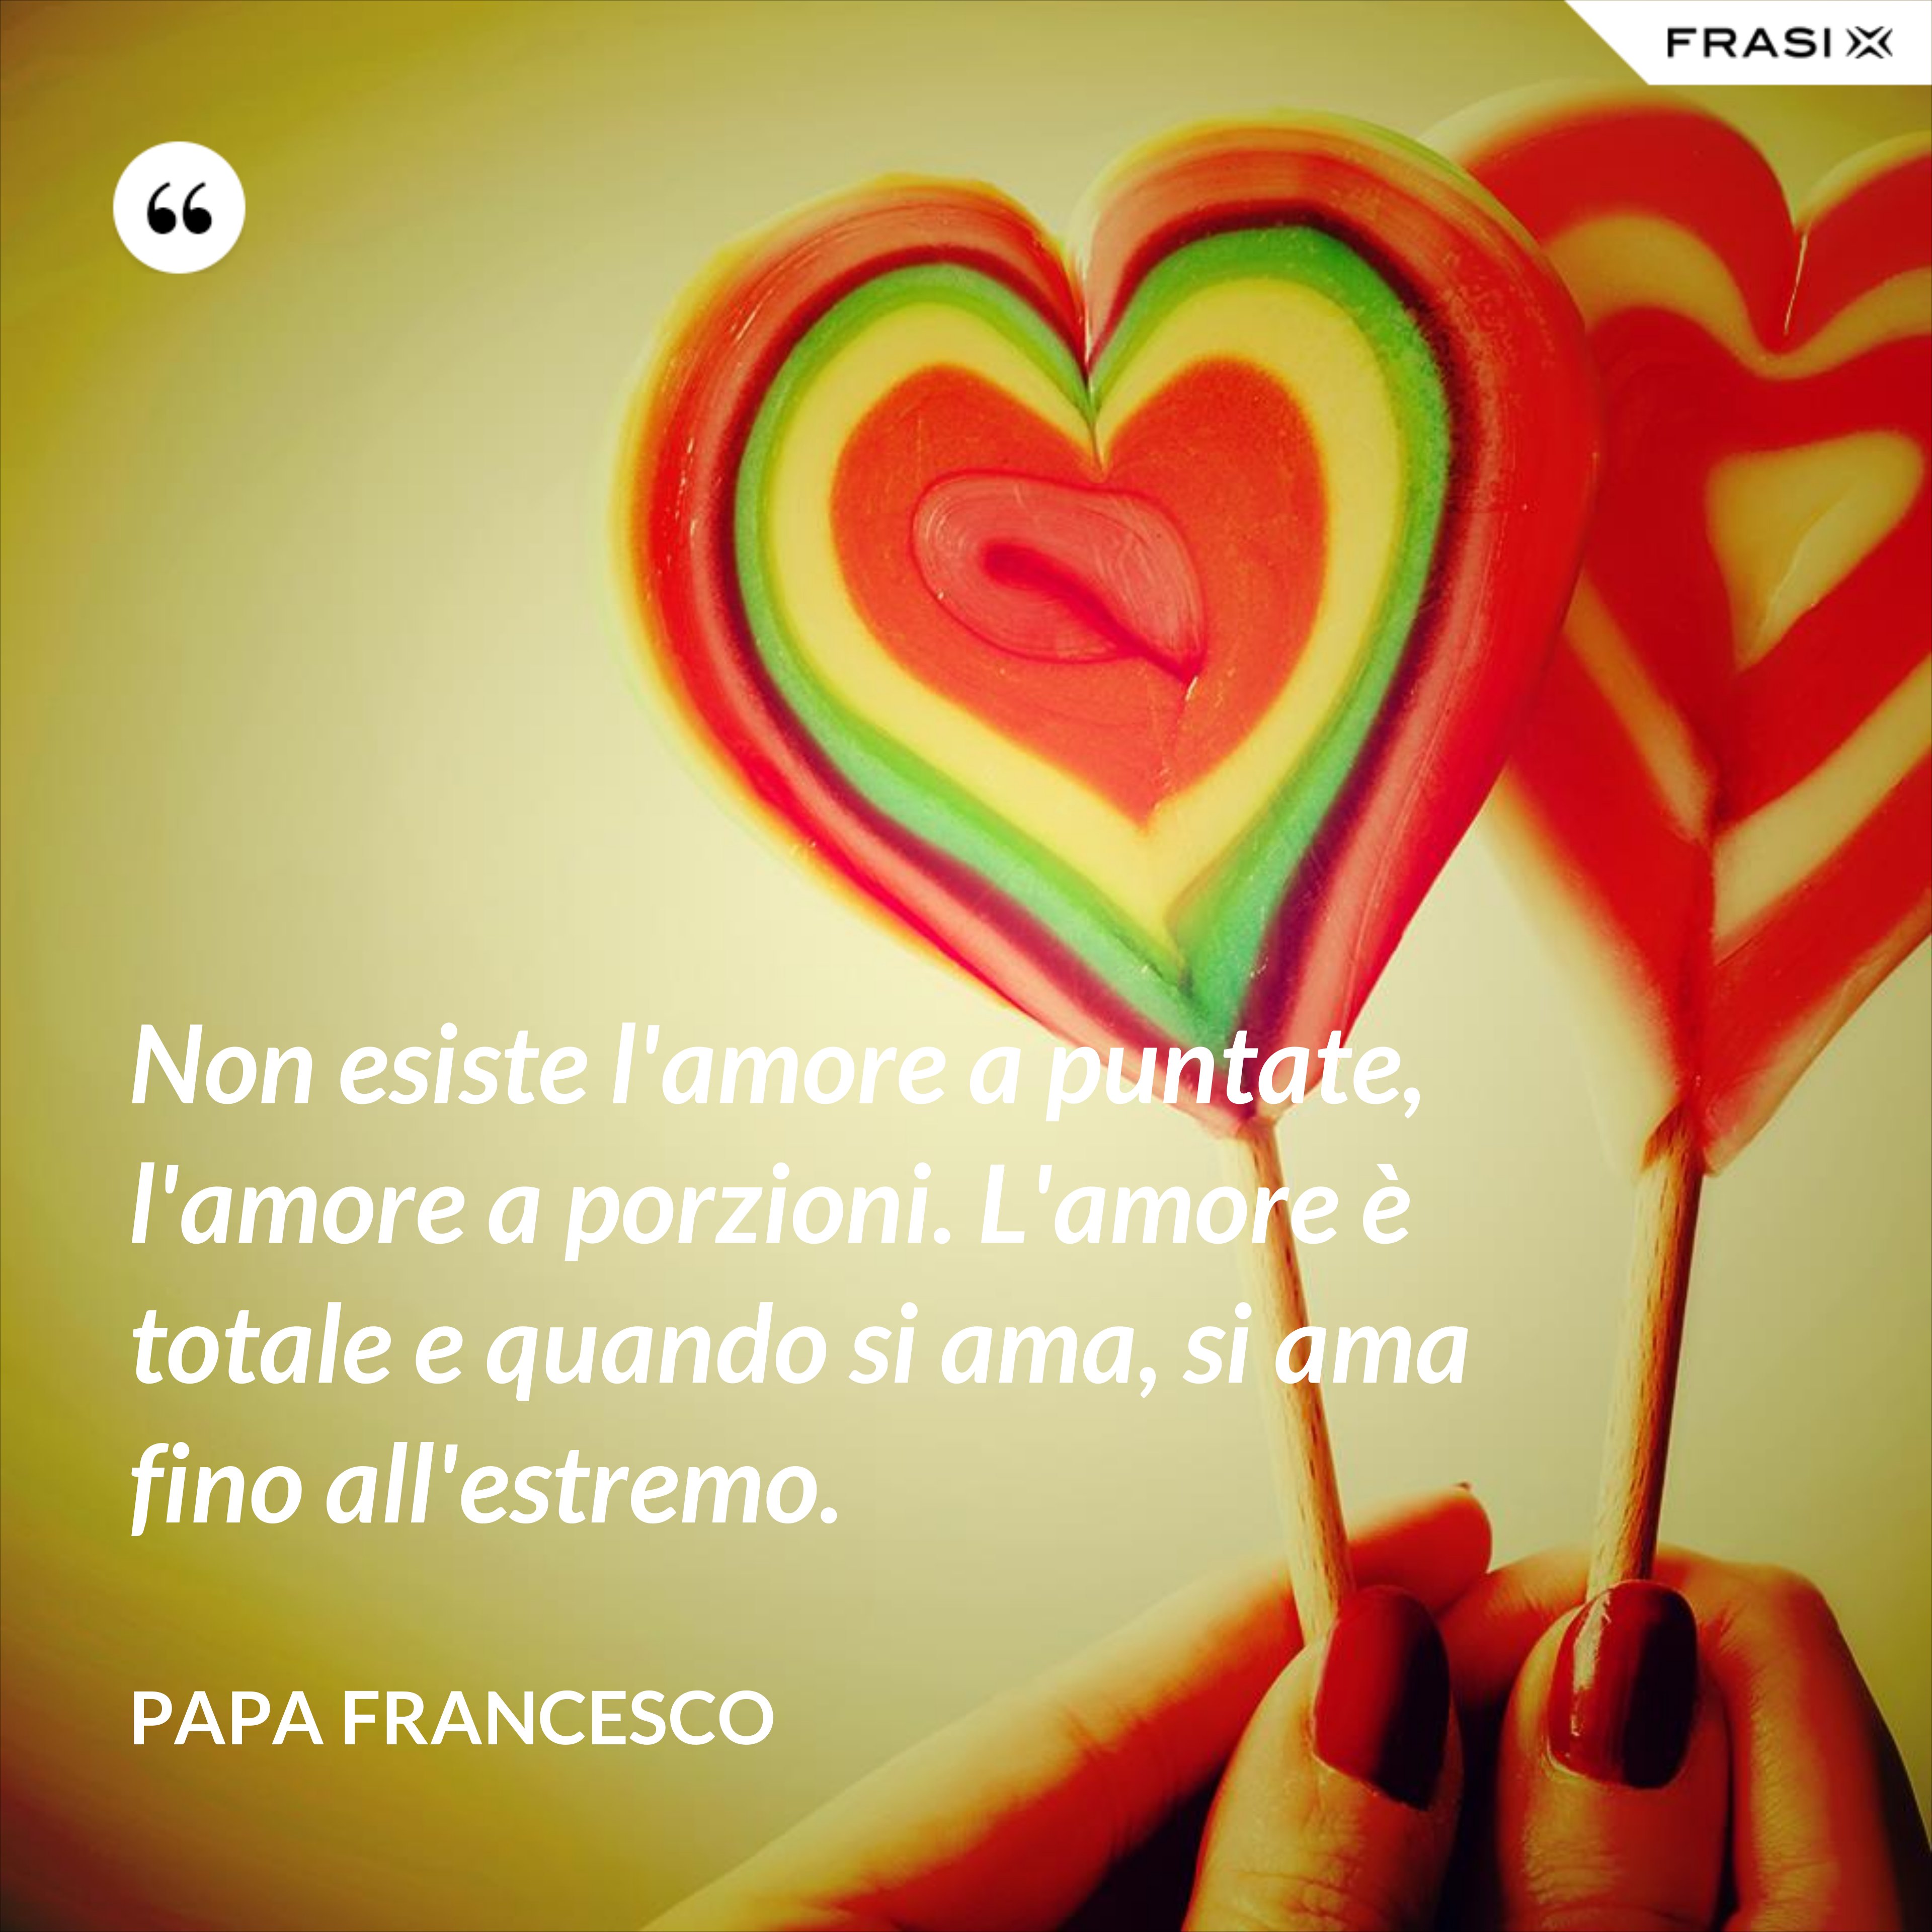 Non esiste l'amore a puntate, l'amore a porzioni. L'amore è totale e quando si ama, si ama fino all'estremo. - Papa Francesco